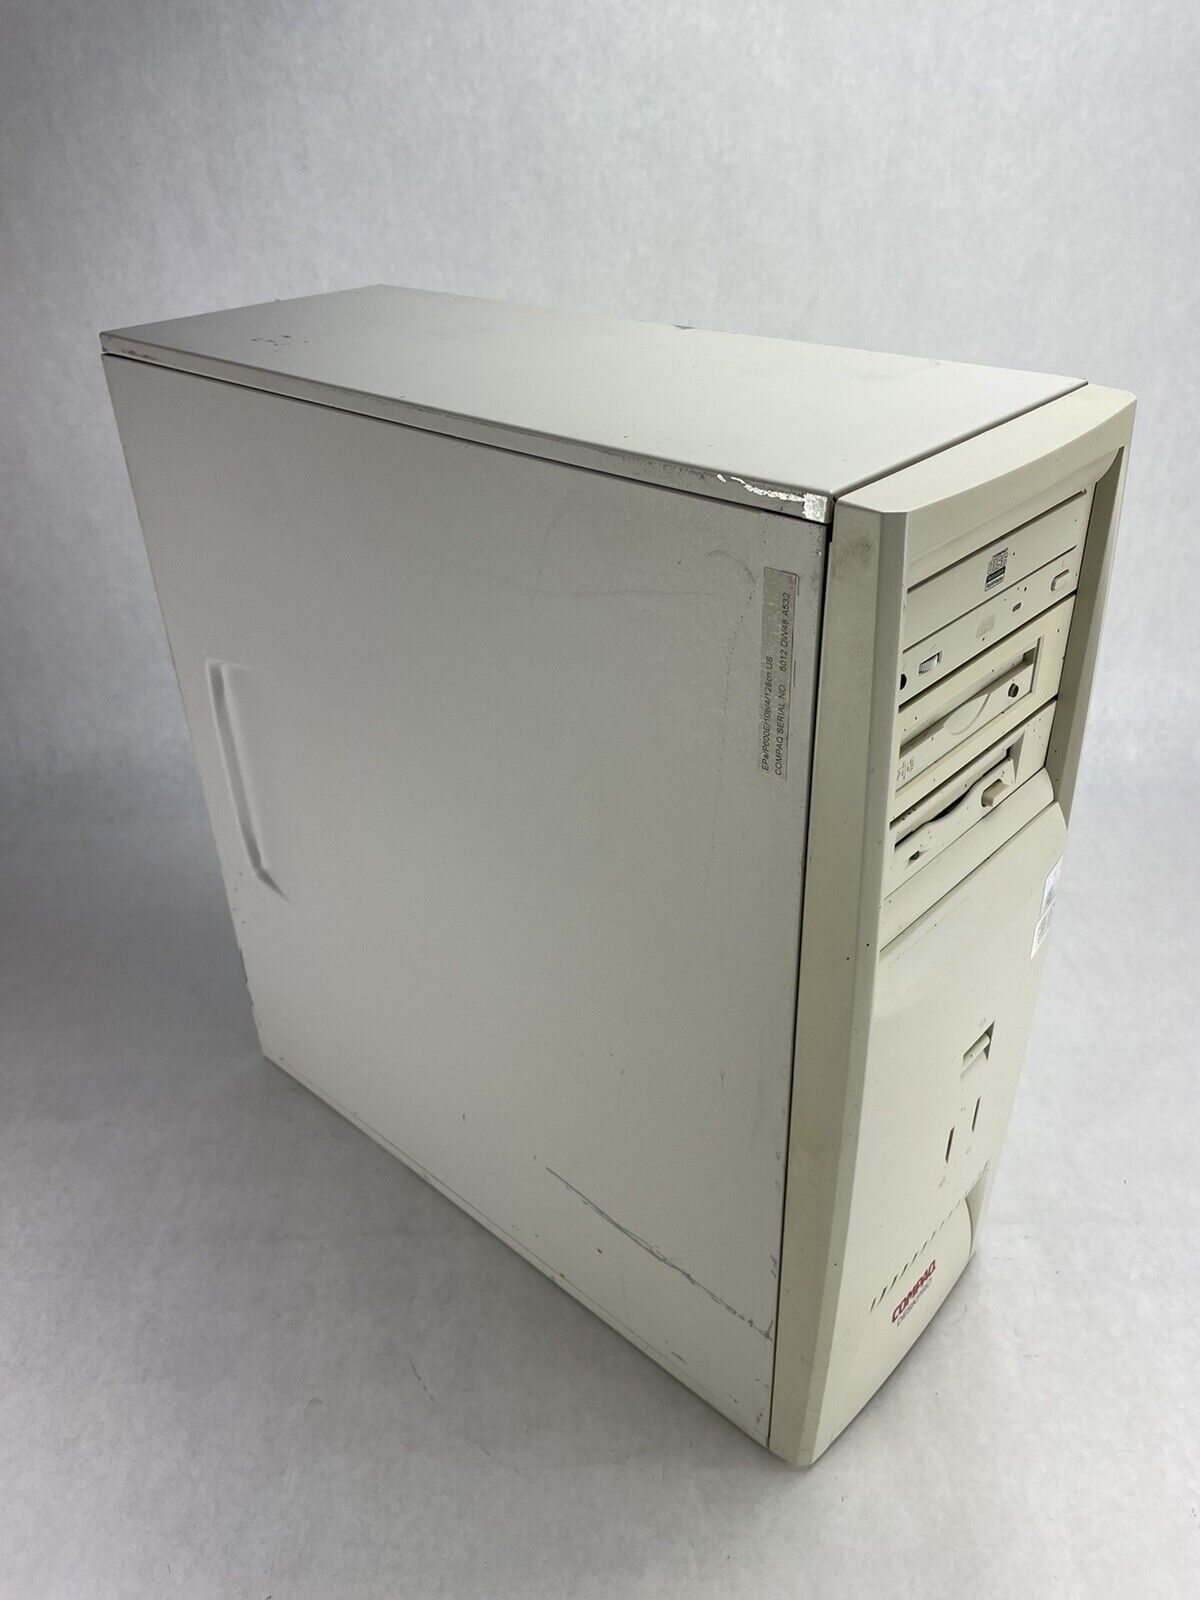 Compaq DeskPro EP MT Intel Pentium III 600MHz 512MB RAM No HDD No OS